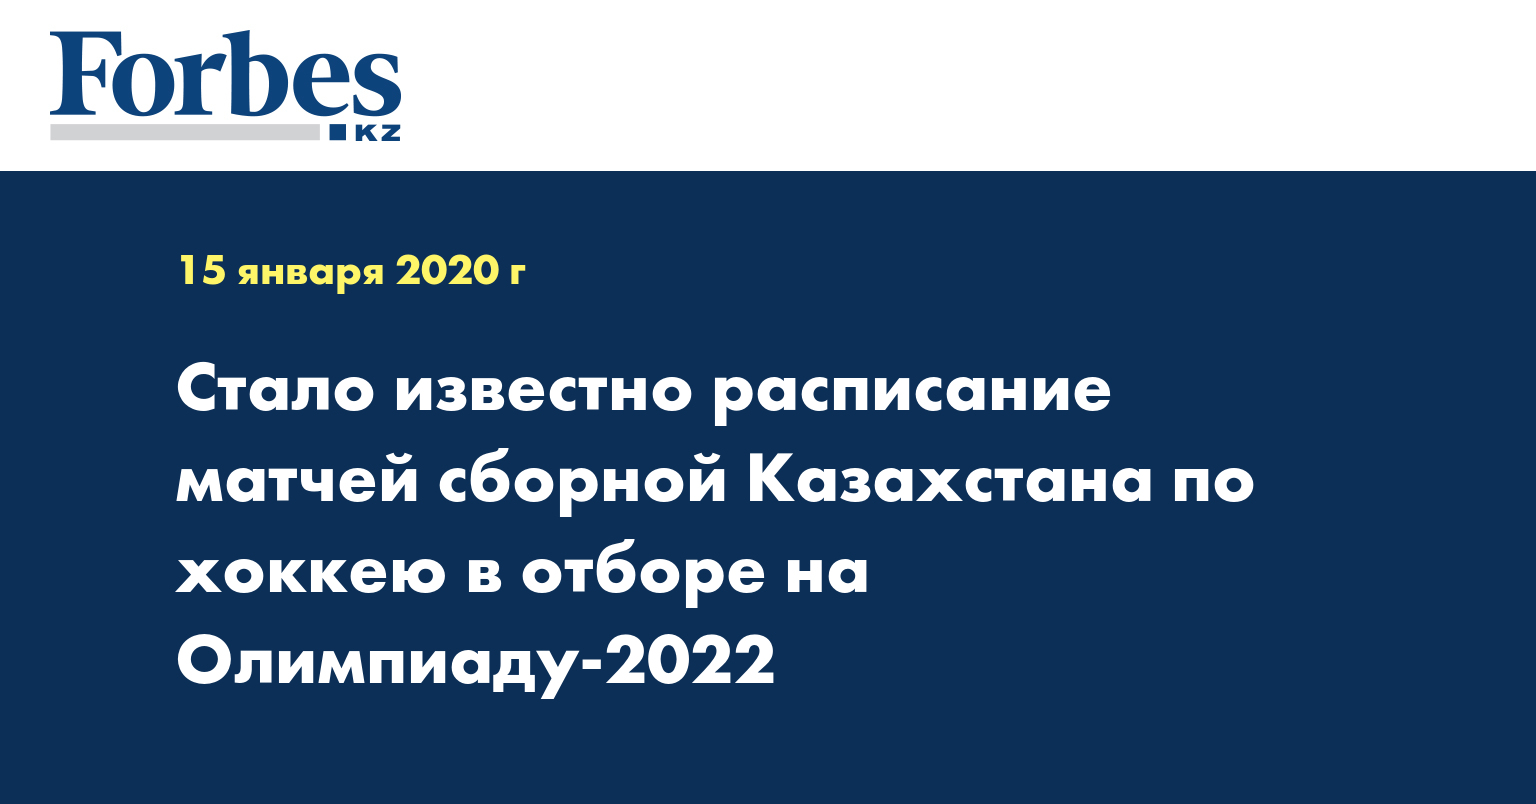 Стало известно расписание матчей сборной Казахстана по хоккею в отборе на Олимпиаду-2022